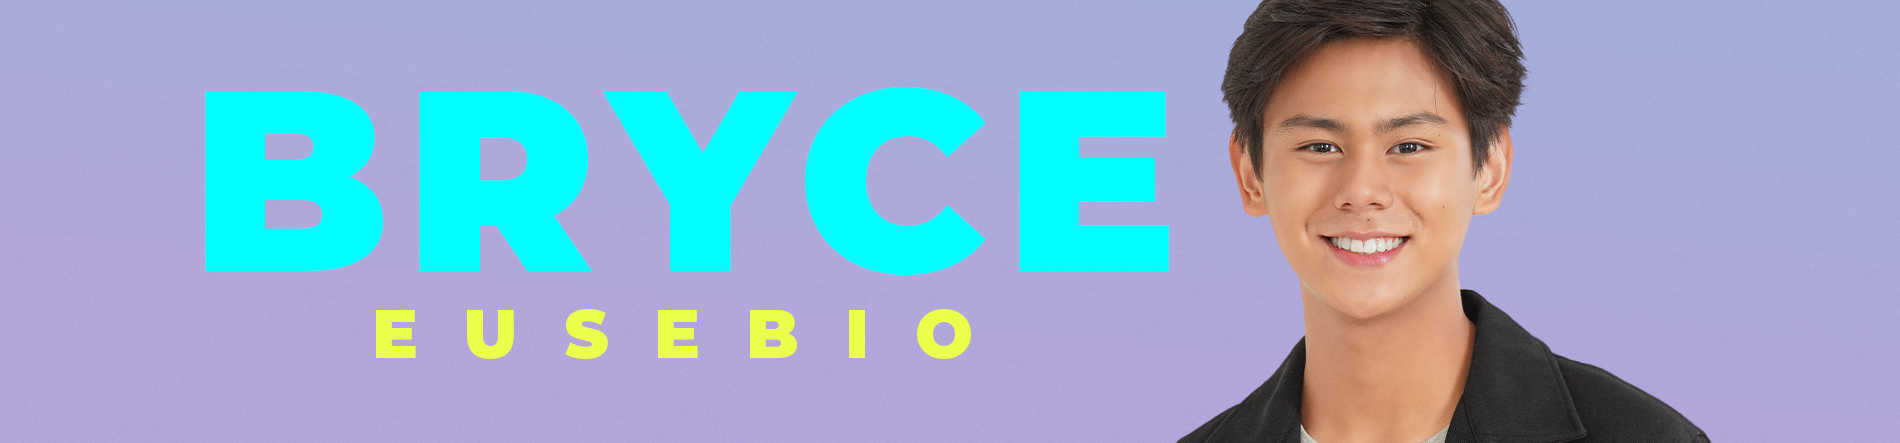 Bryce Eusebio Desktop Banner